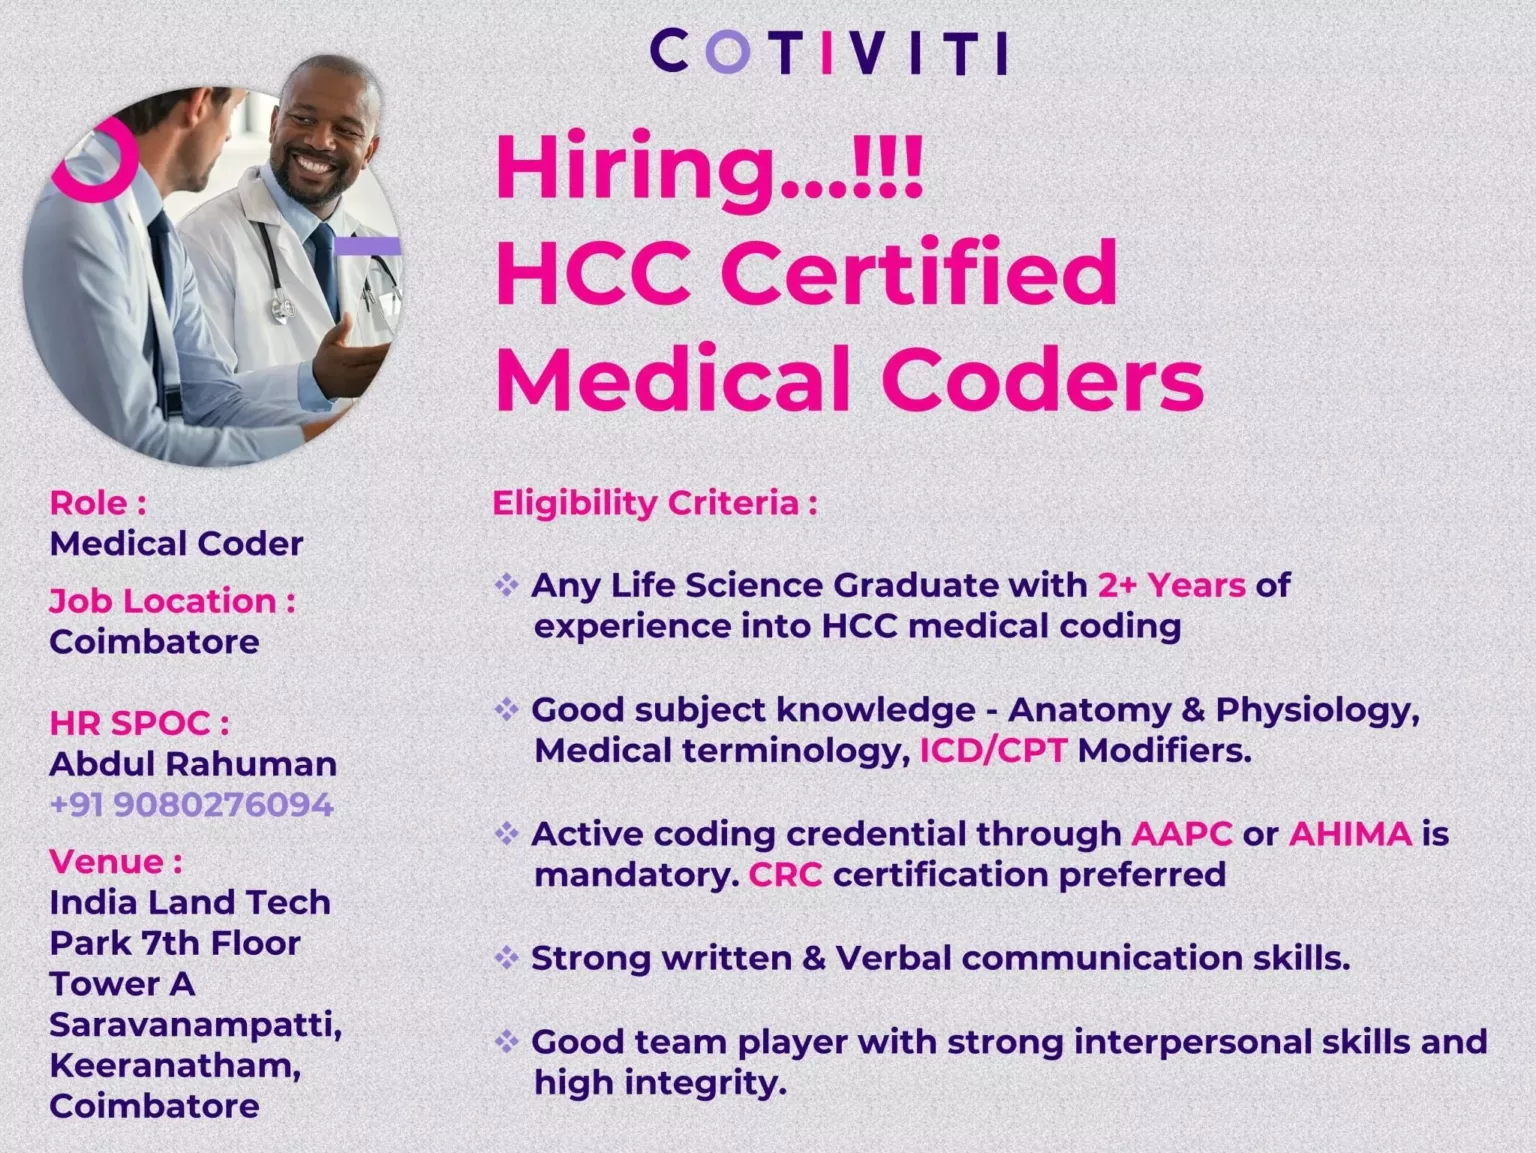 Cotiviti Hiring HCC Certified Medical Coders